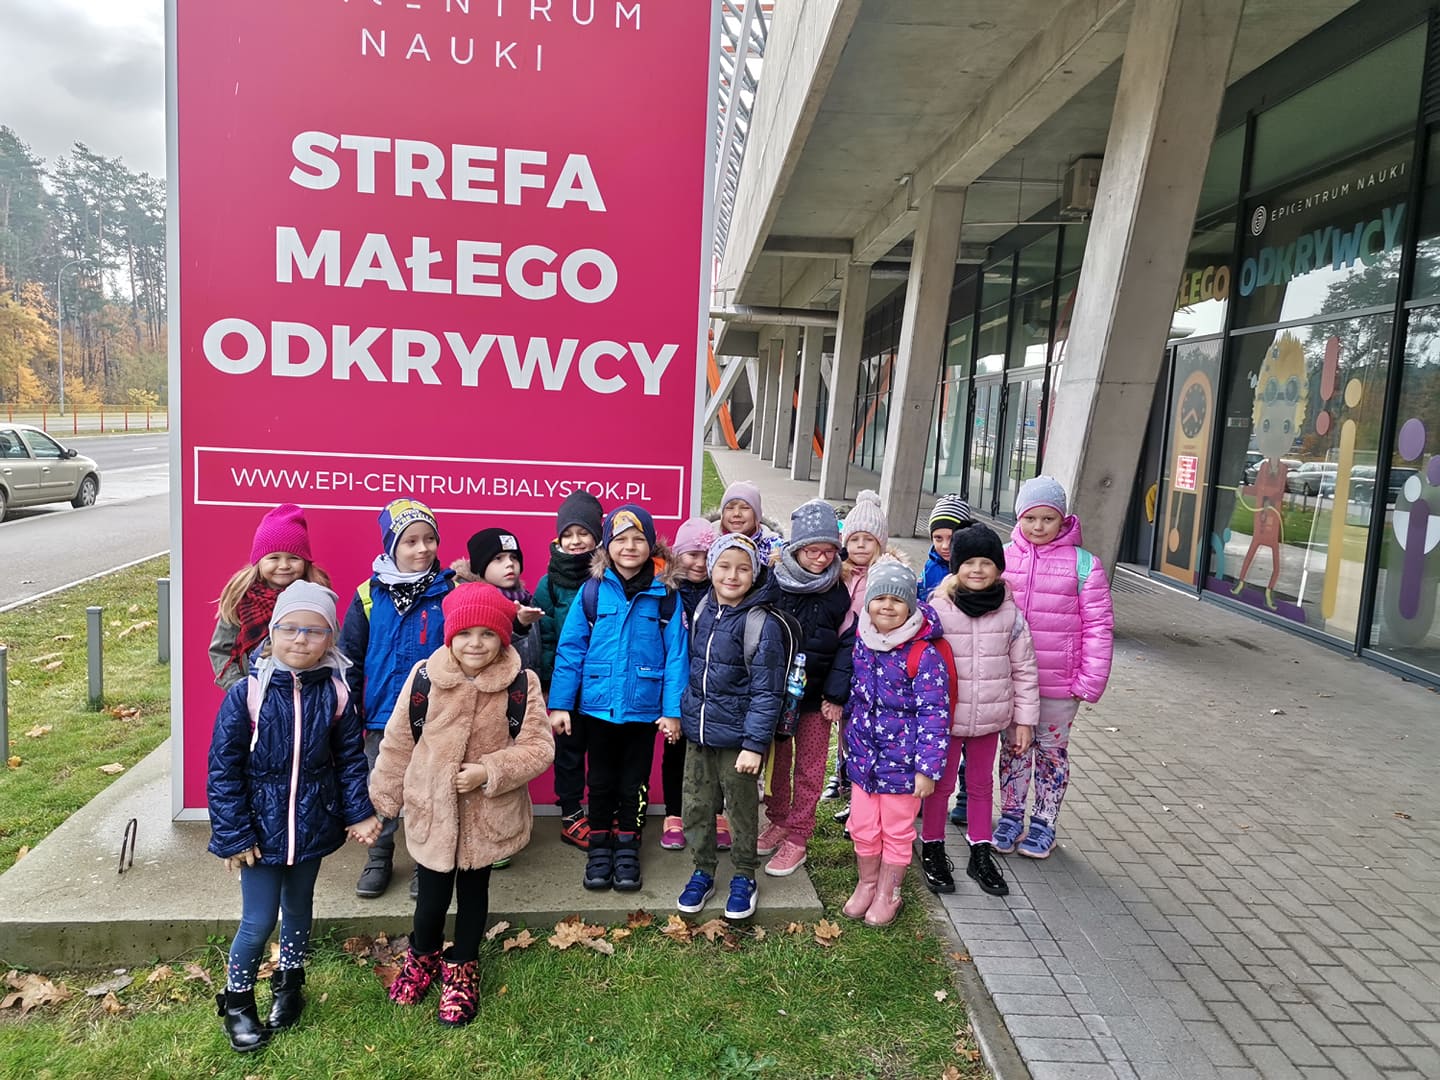 Gromadka dzieci na tle budynku Epicentrum w Białymstoku w Strefie Małego Odkrywcy.